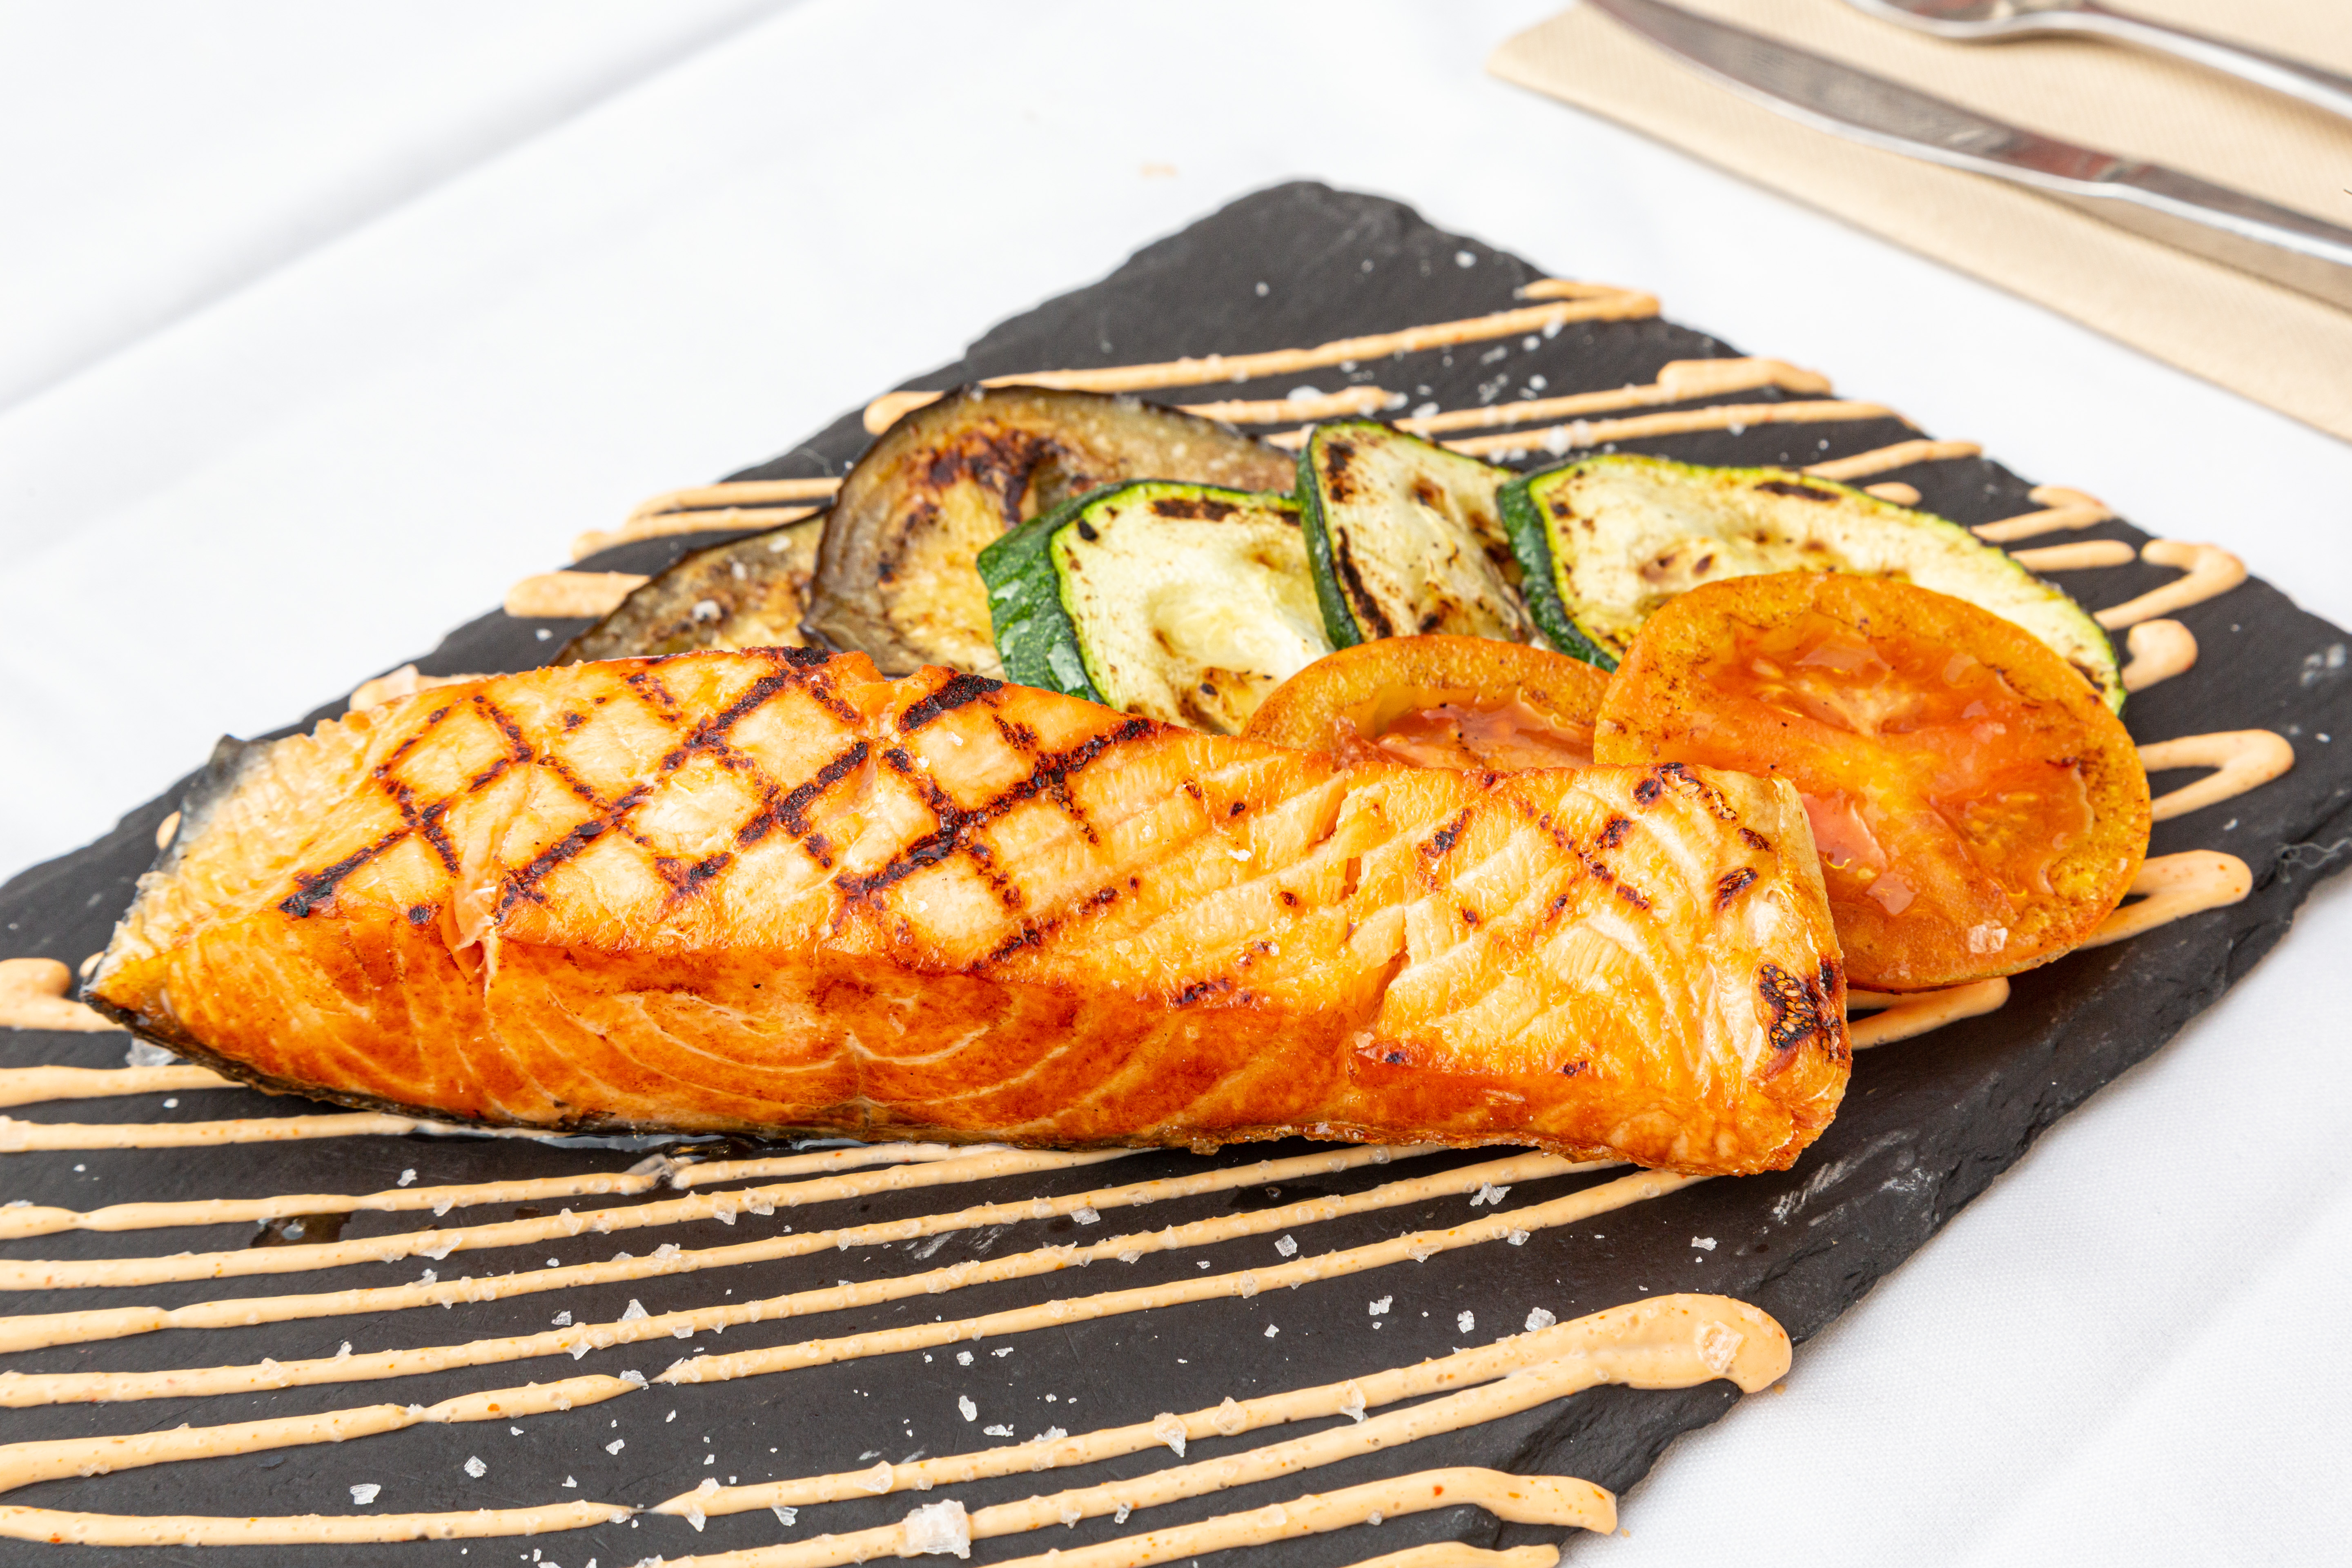 Saumon norvégien grillé accompagné de légumes de saison avec une touche de siracha.